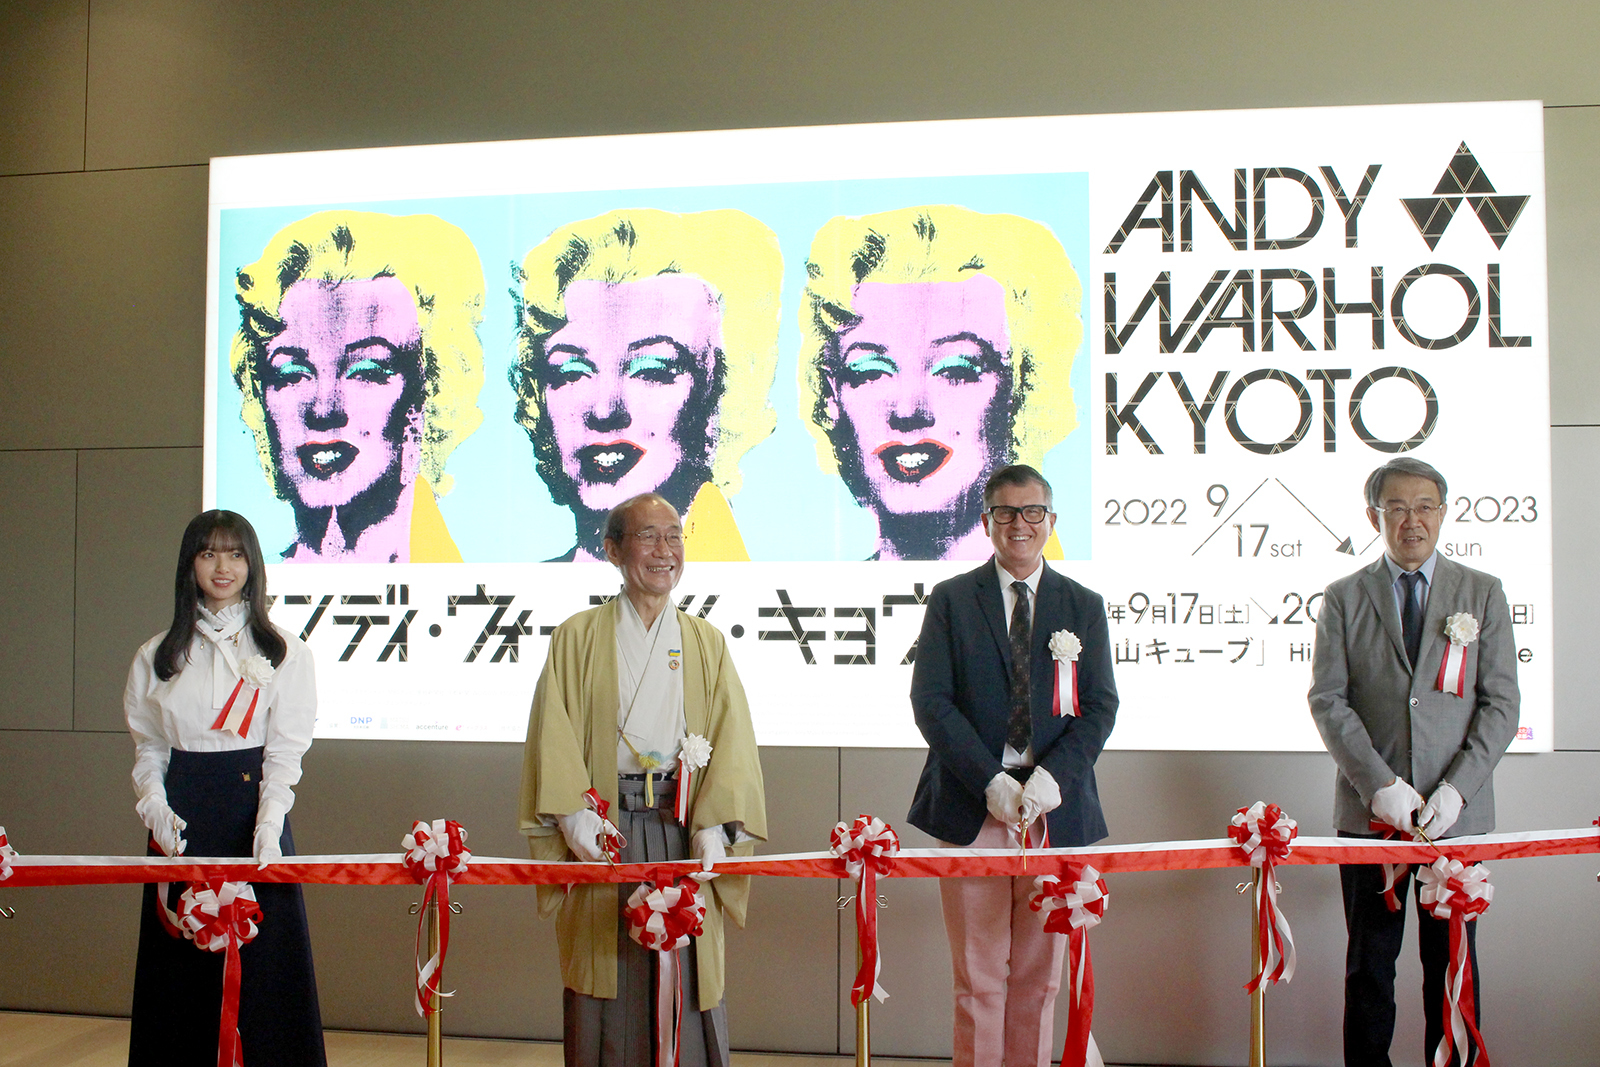 乃木坂46齋藤飛鳥も登壇した『アンディ・ウォーホル・キョウト』開会式